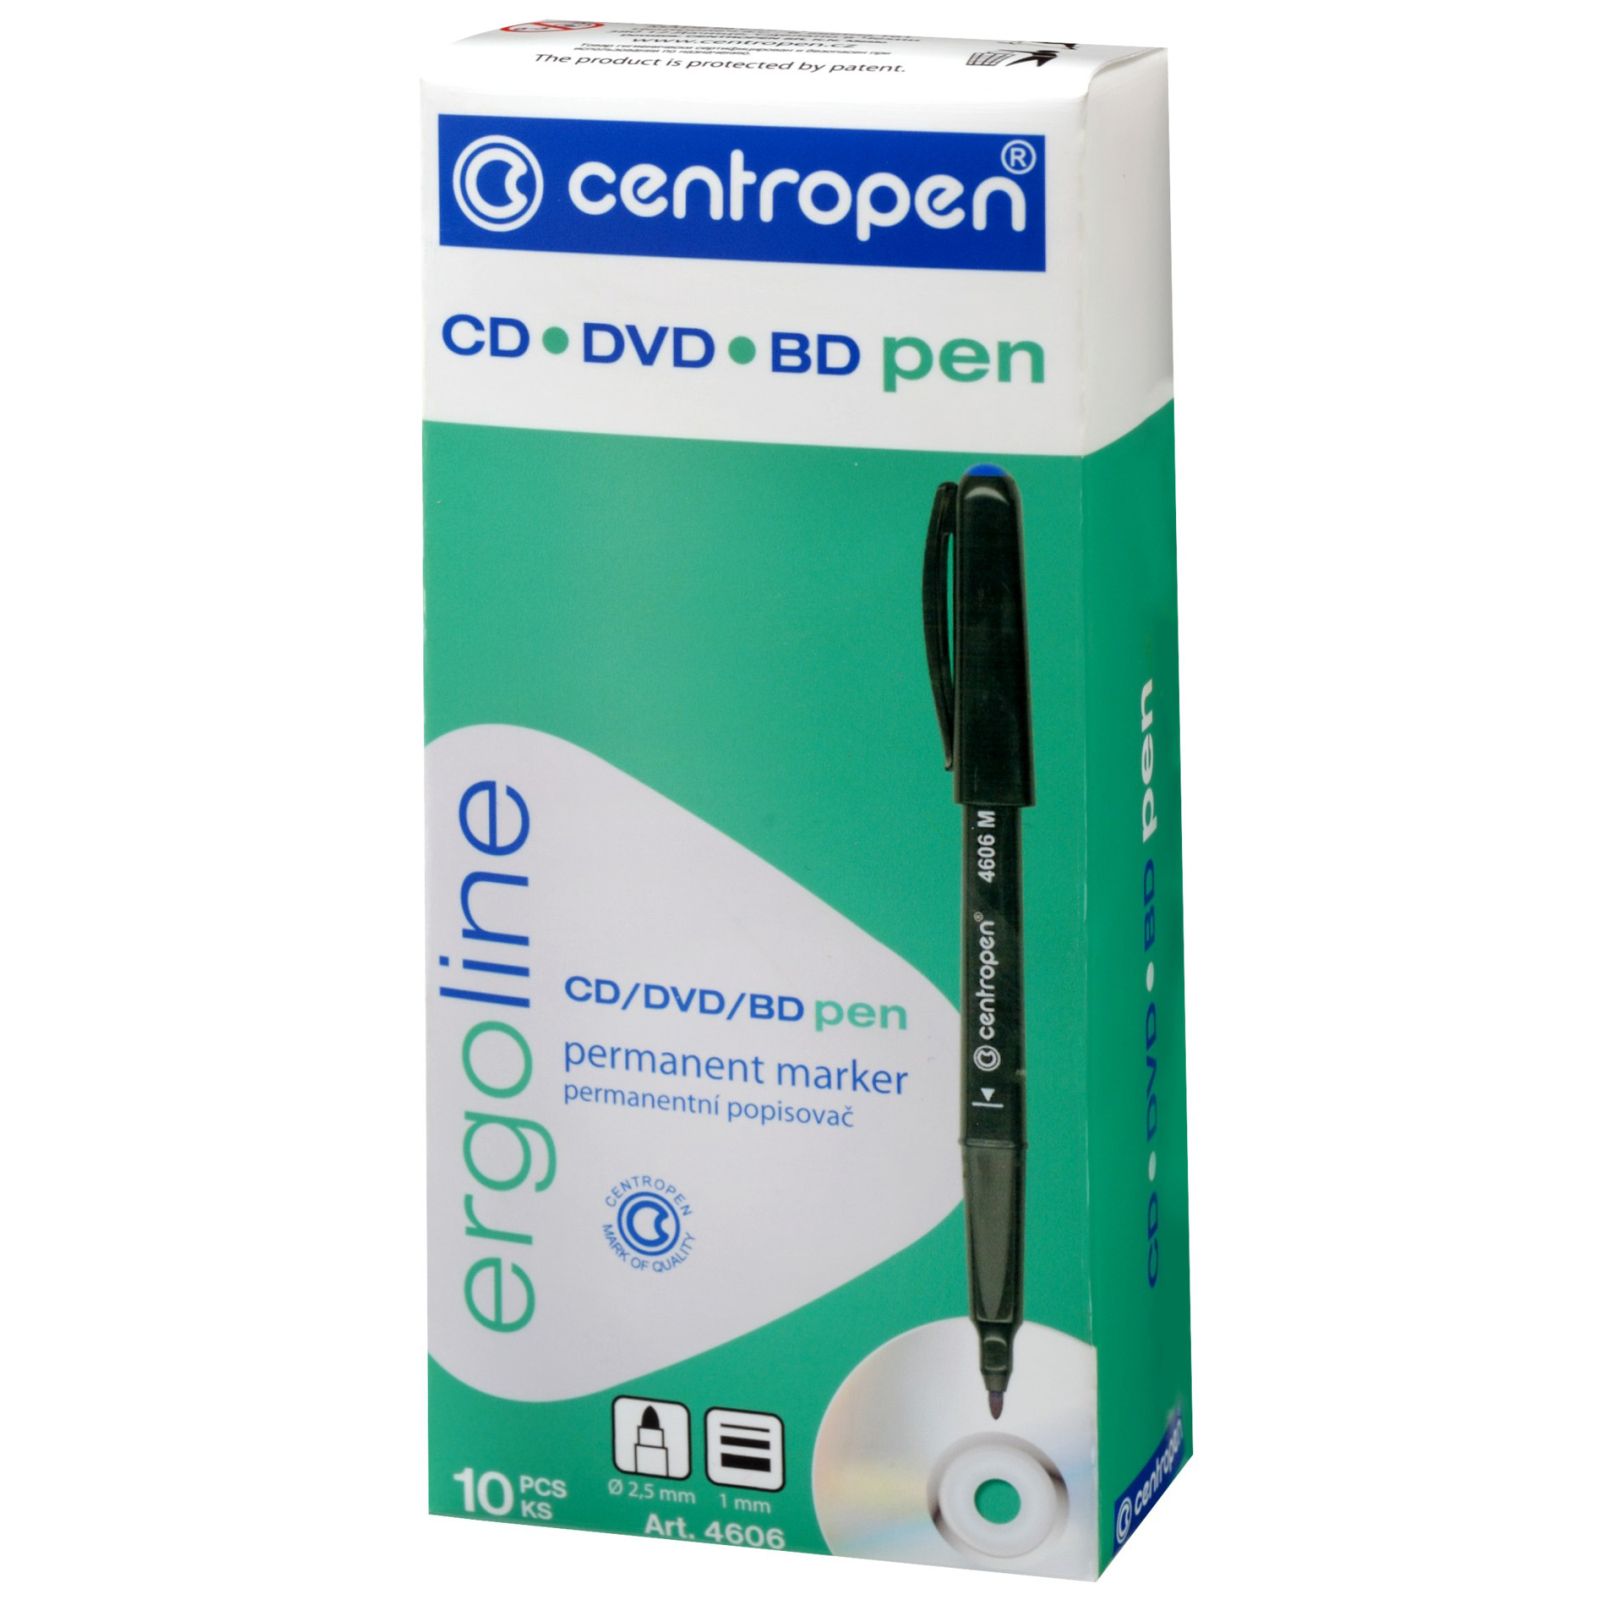 Маркер Centropen CD-Pen 4606 ergoline, 1 мм green (4606/04) изображение 2